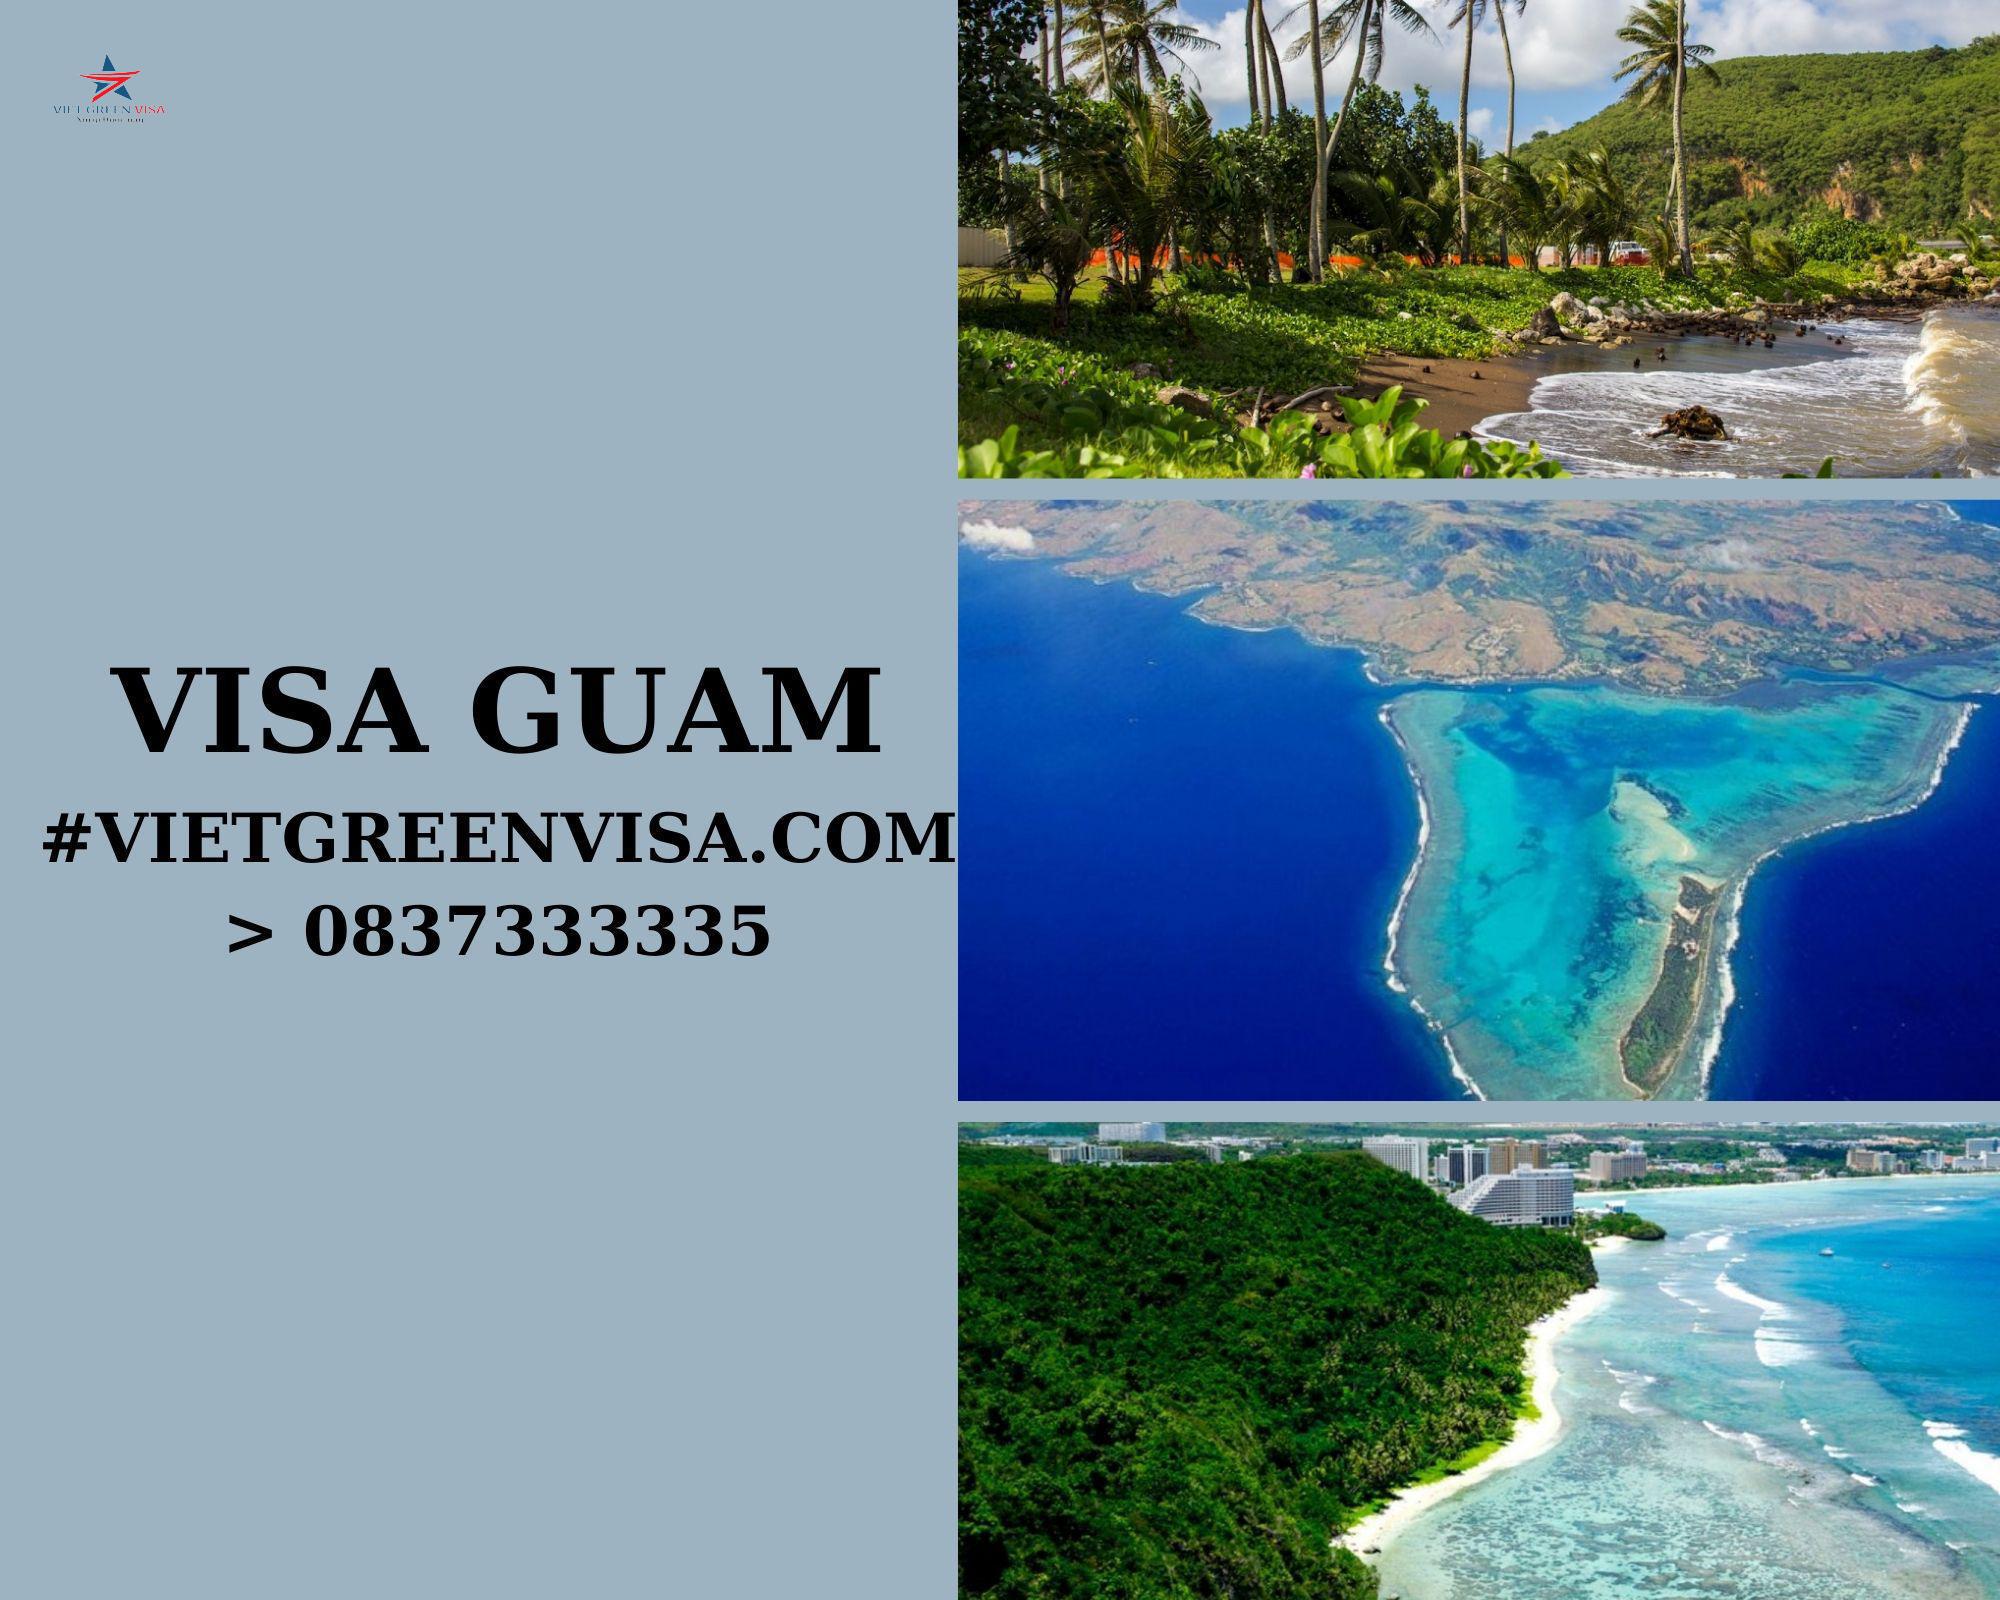 Dịch vụ làm visa Guam thăm thân trọn gói uy tín giá rẻ